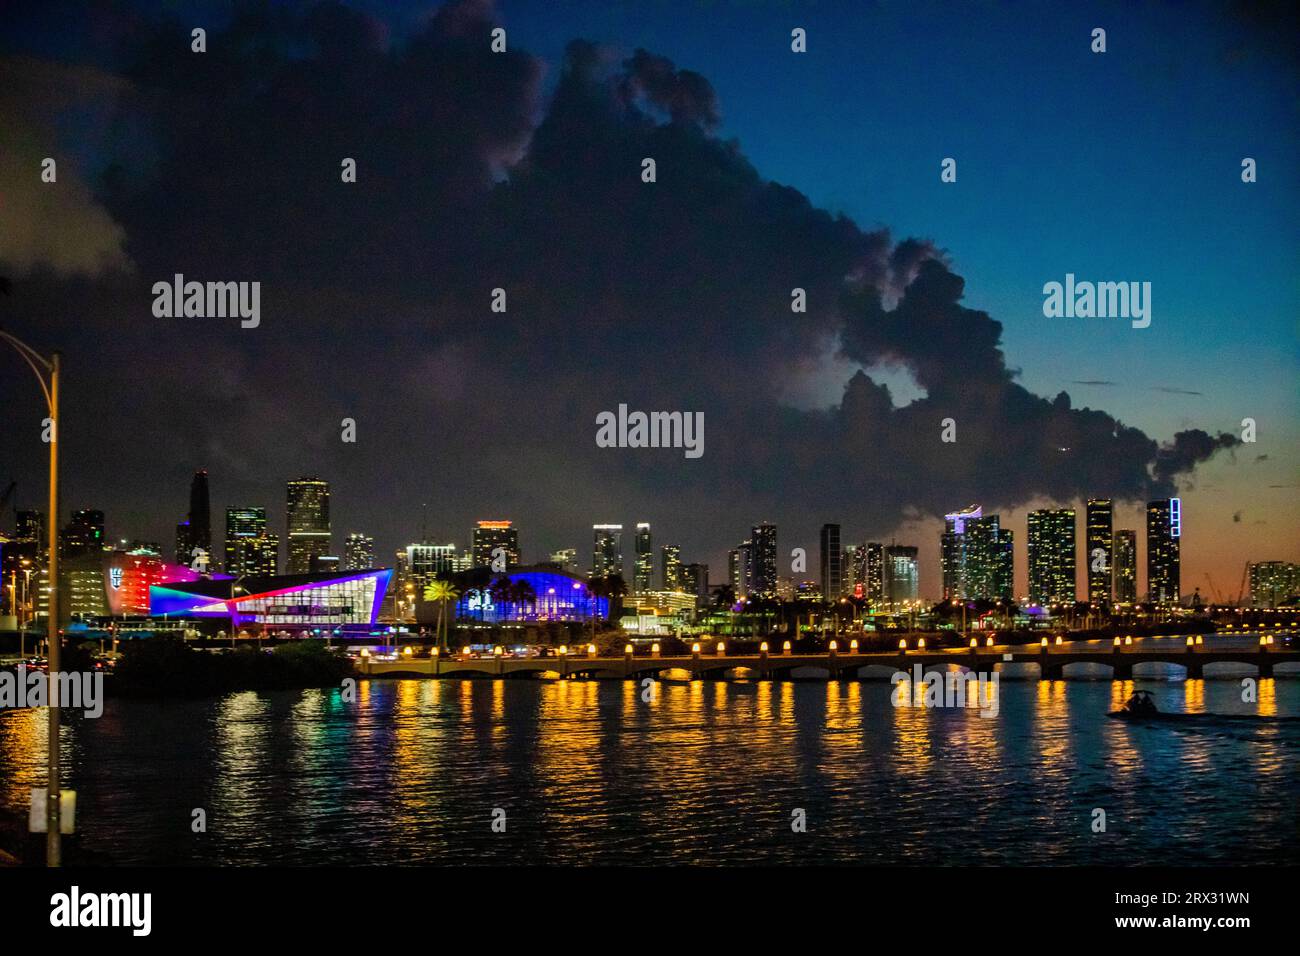 Miami Bridge at night, Miami, Florida, United States of America, North America Stock Photo